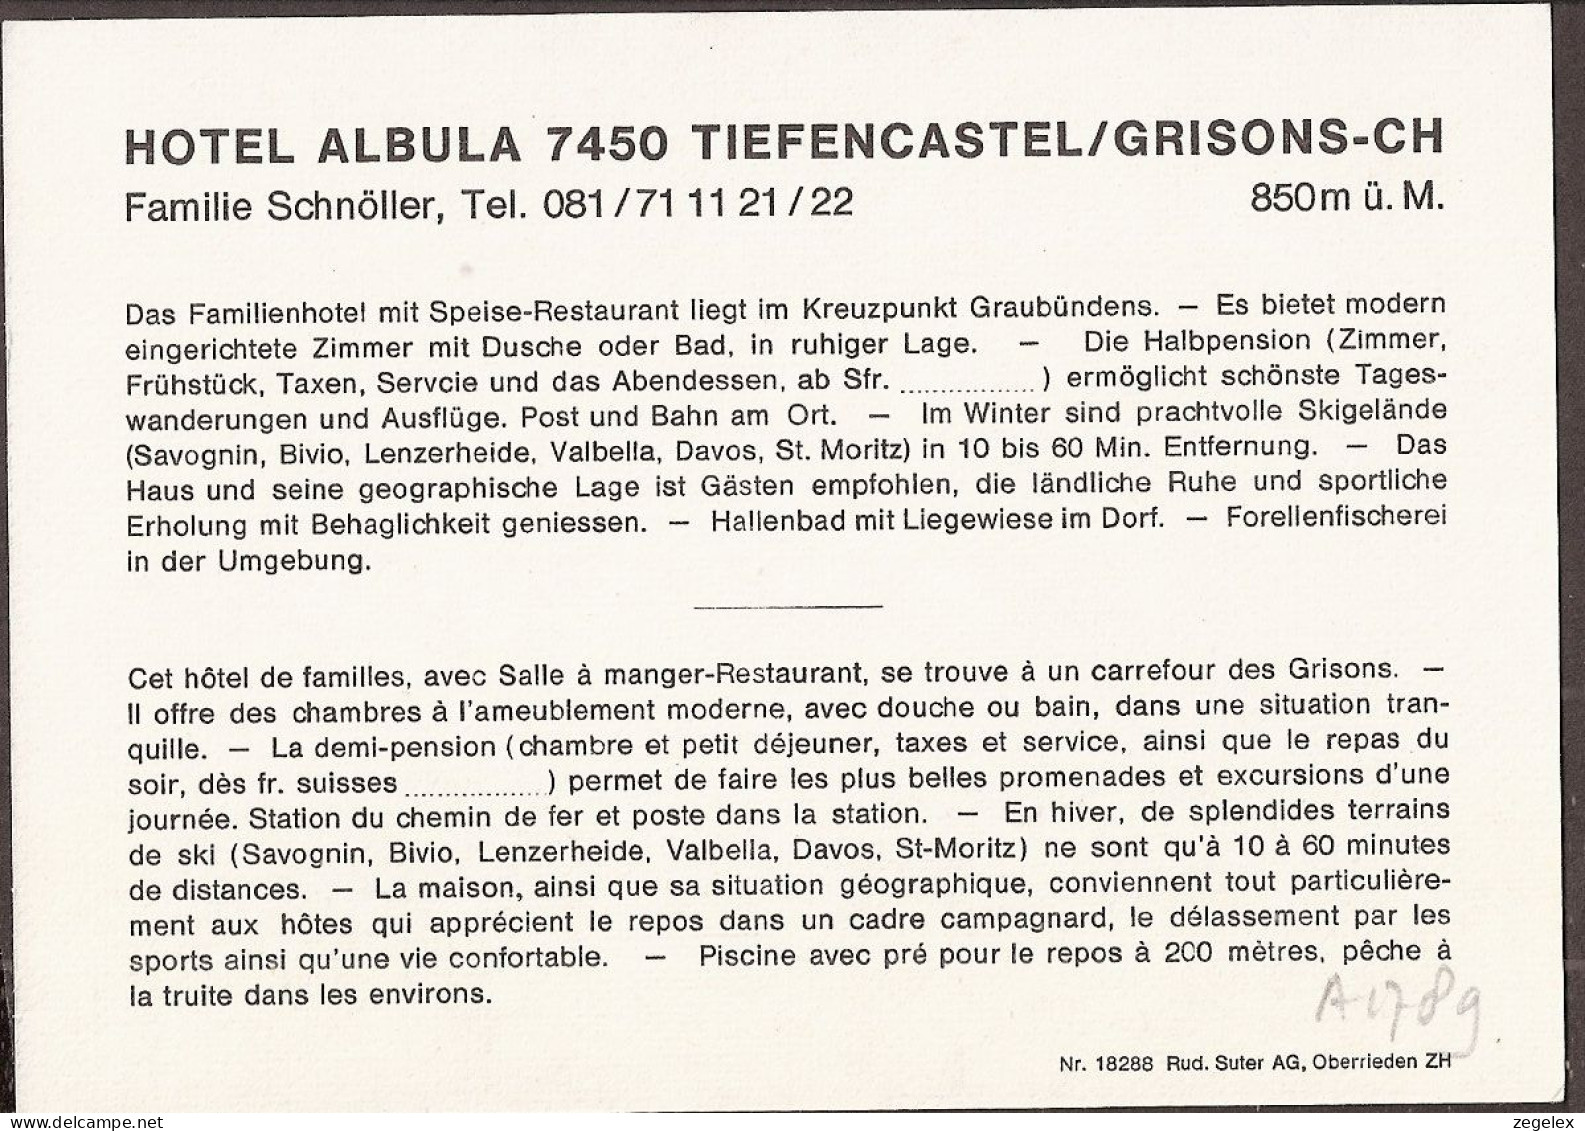 Tiefencastel/Grisons - Hotel Albula - Tiefencastel